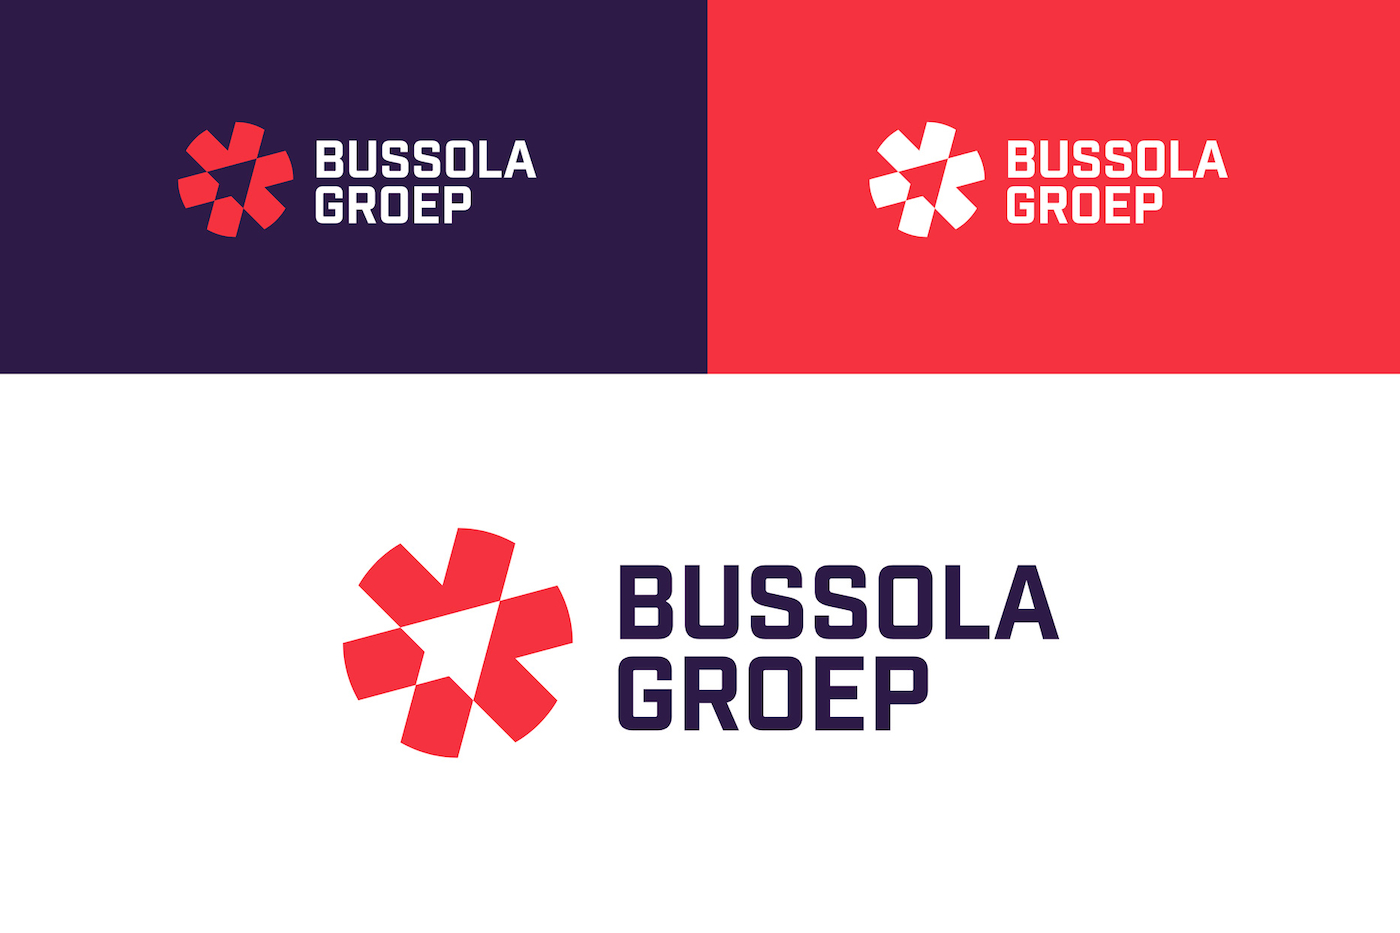 Bussola Groep